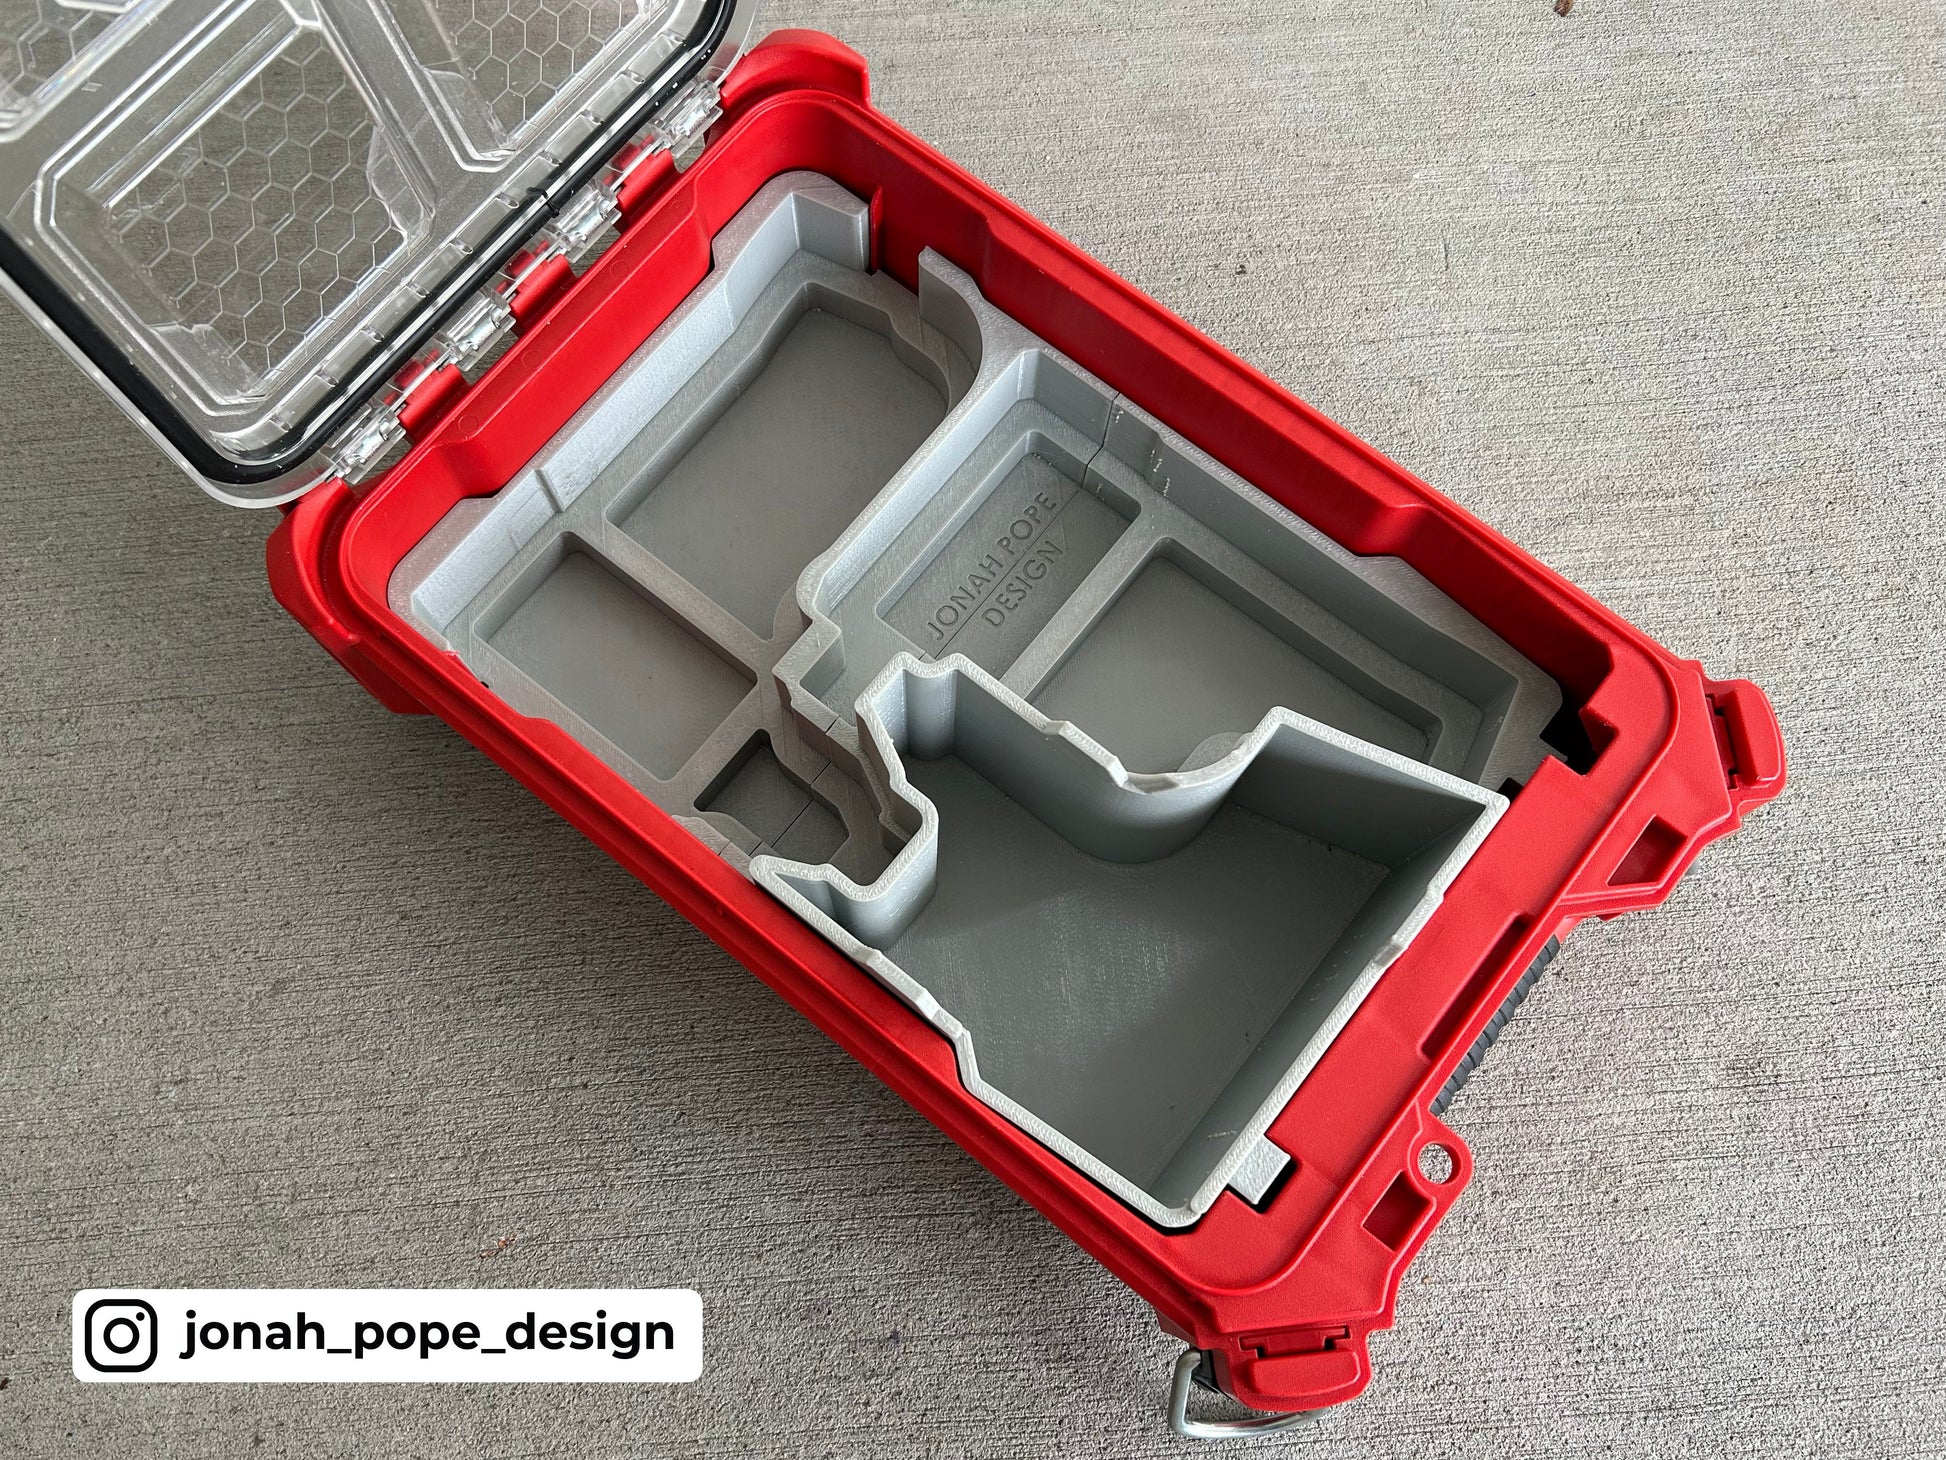 Packout Insert For M12 Rotary Tool - Jonah Pope Design (JP-RT)